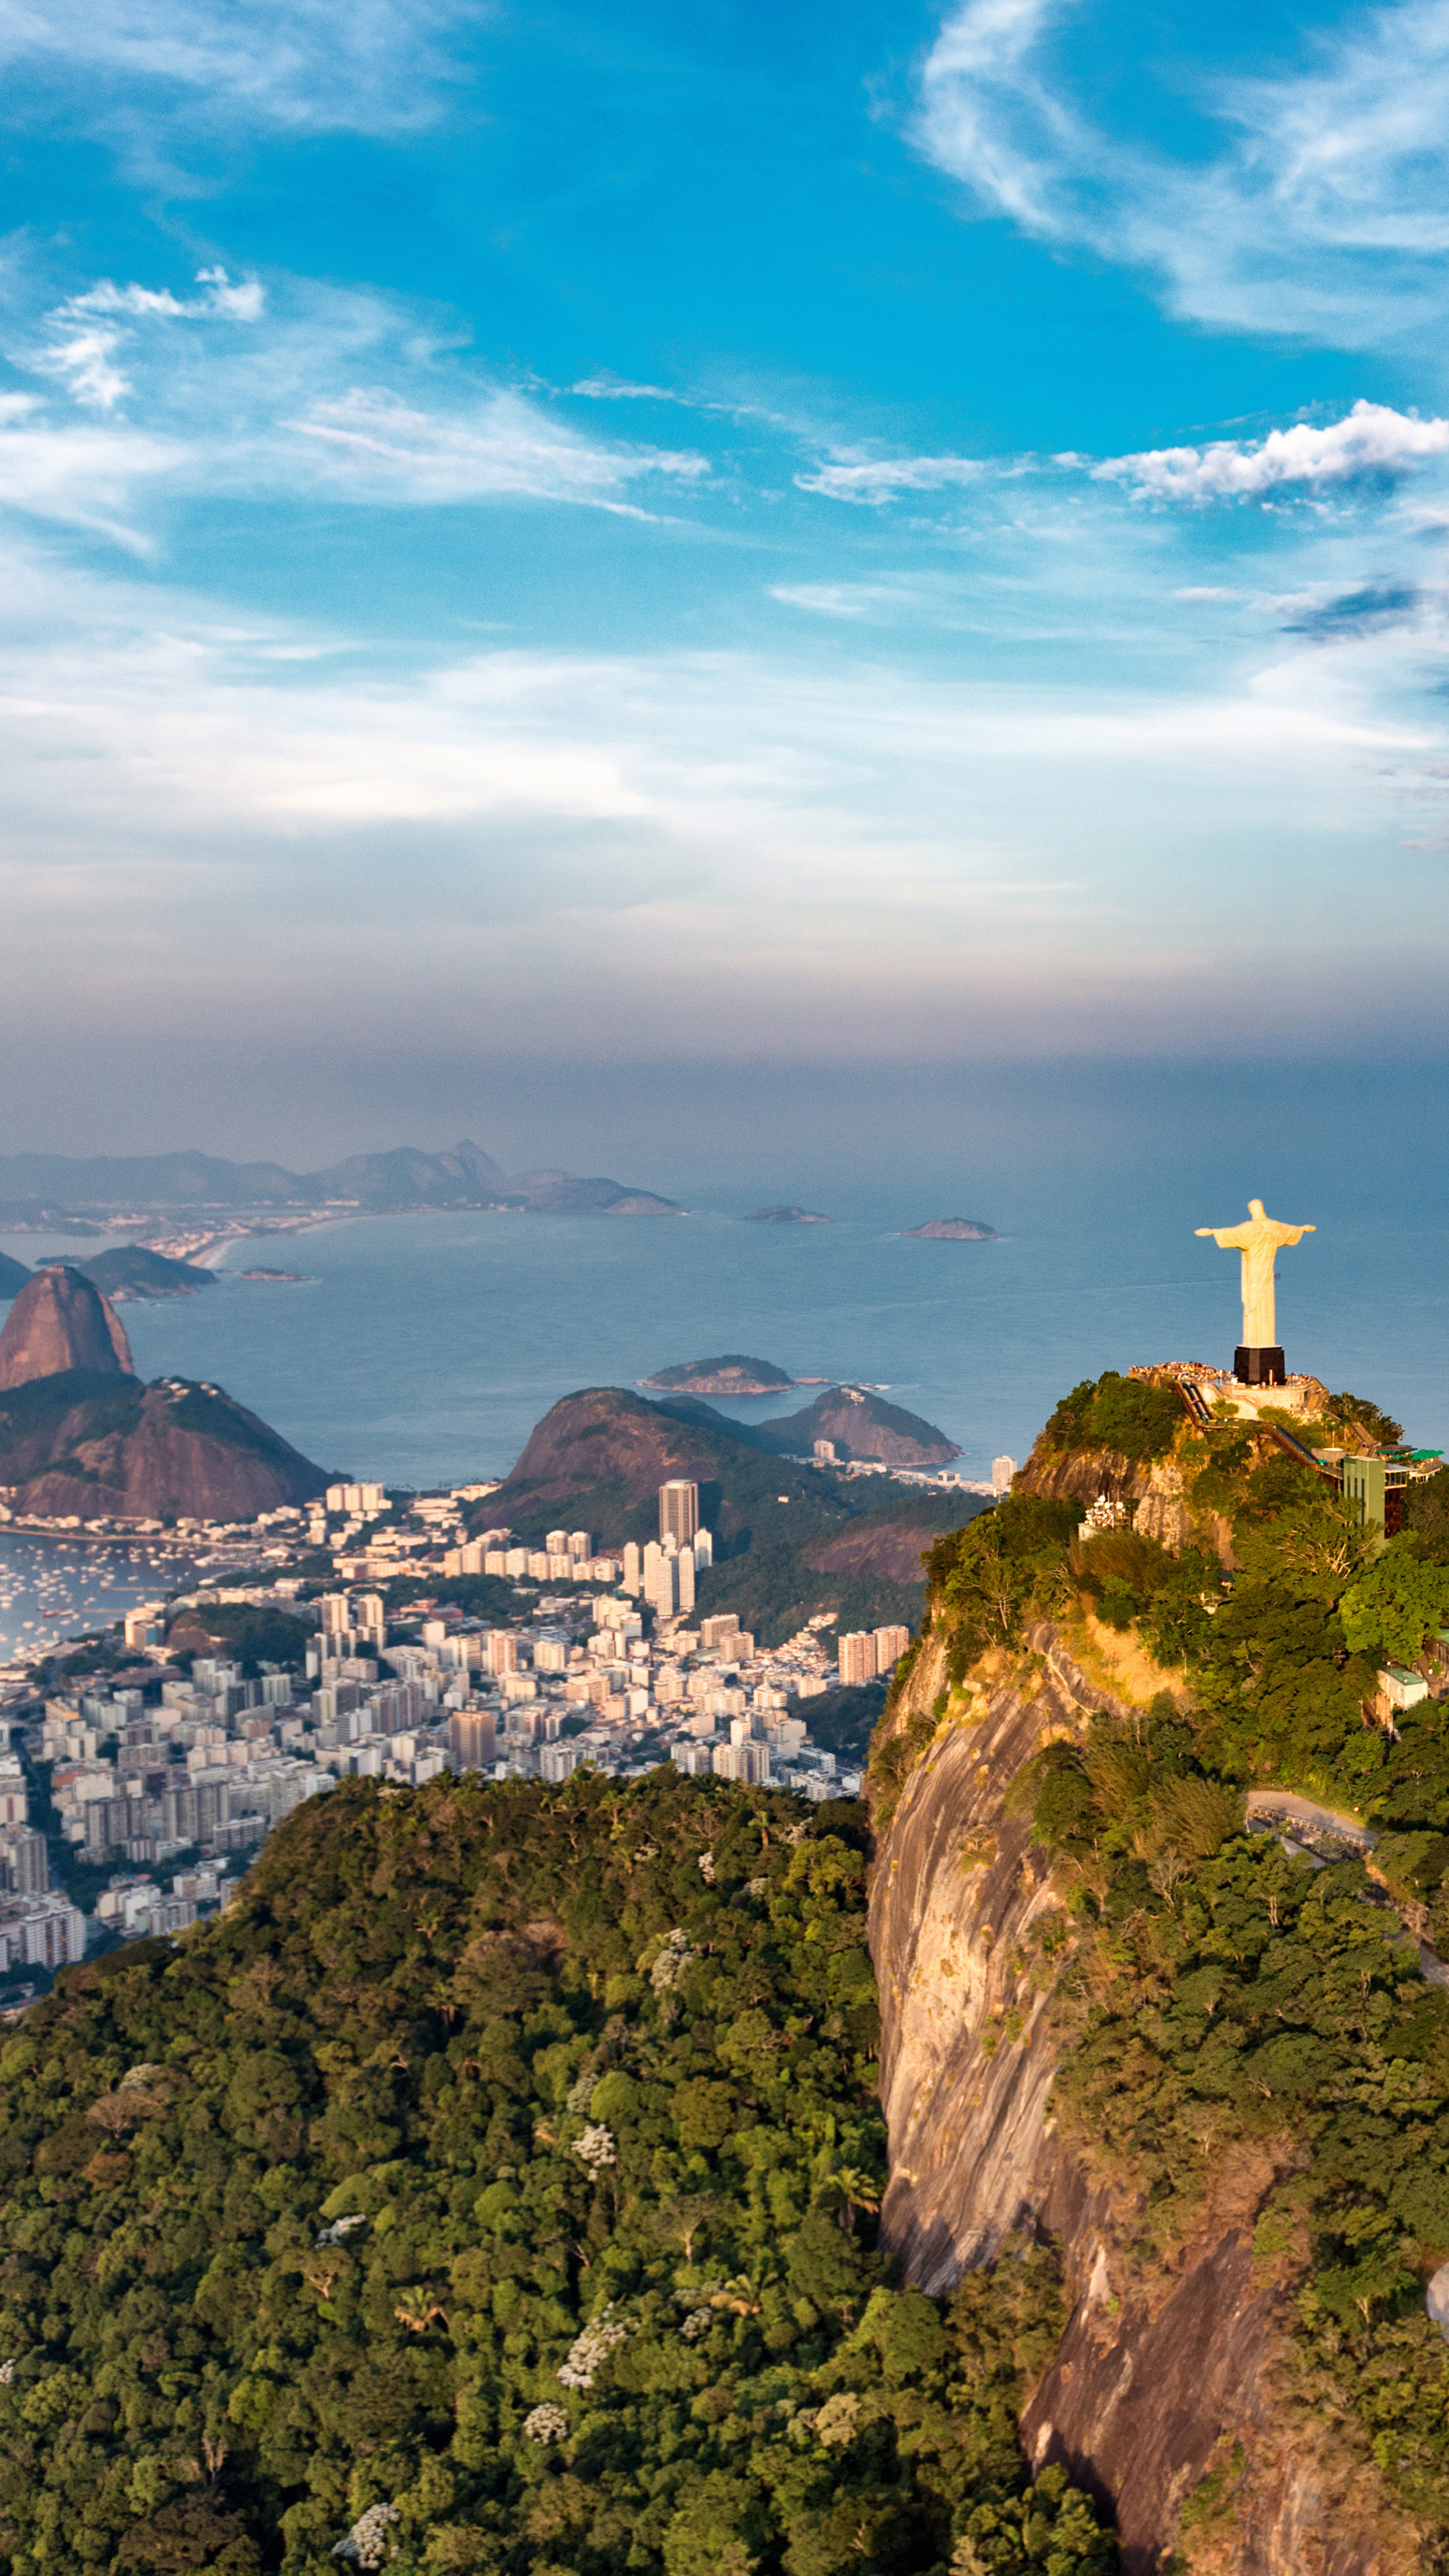 Christ the Redeemer, Man-made wonder, Rio de Janeiro, Brazilian beauty, 2160x3840 4K Handy